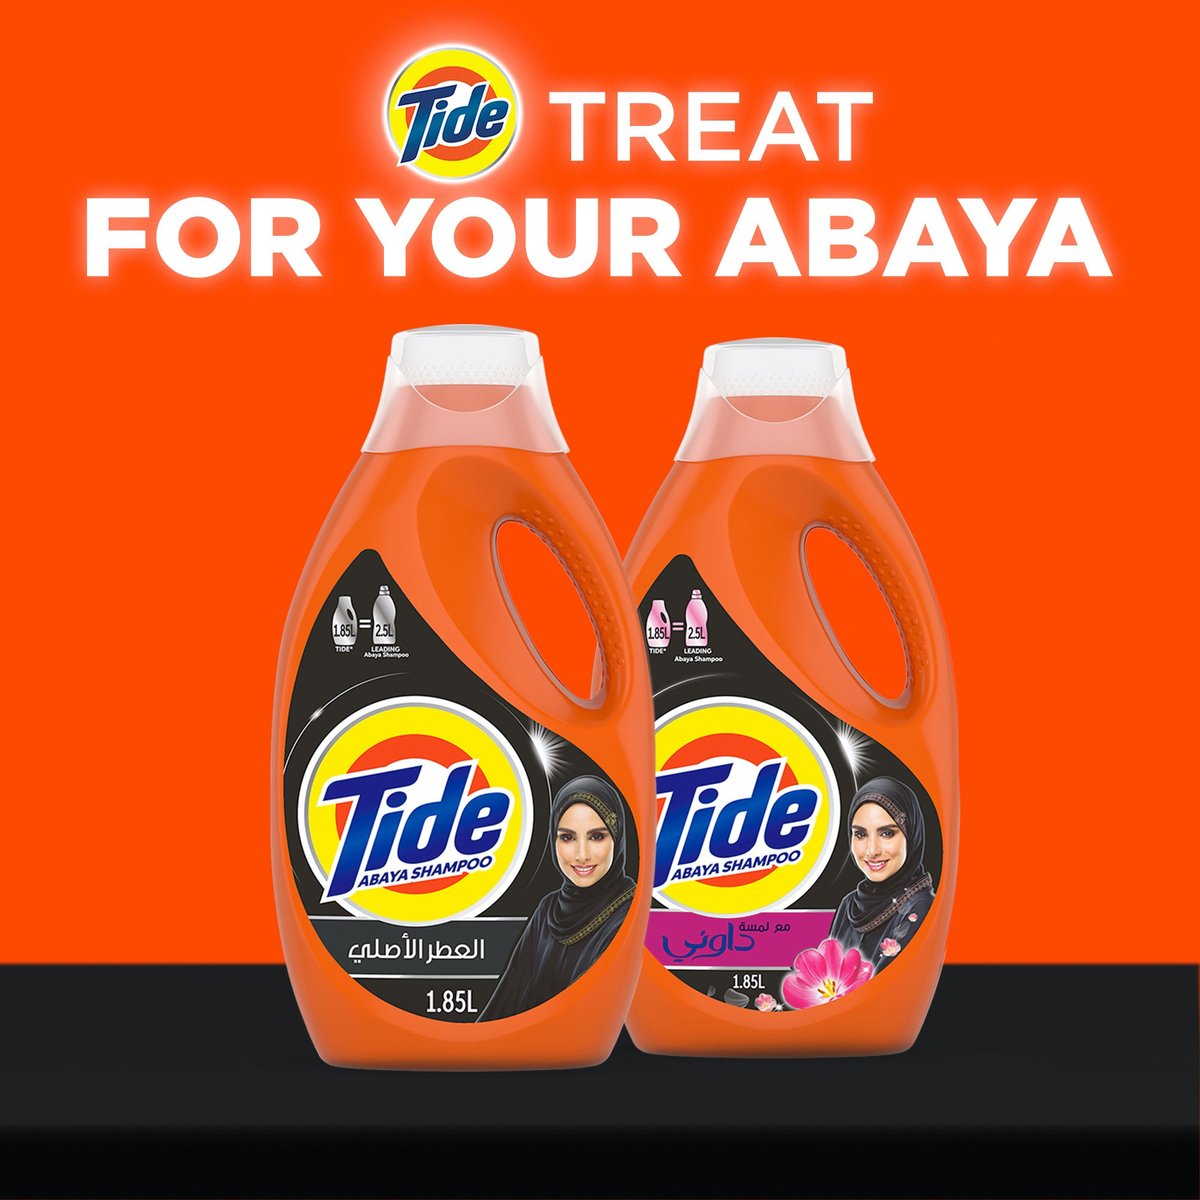 Tide Abaya Shampoo Washing Detergent Original Scent 1.05Litre